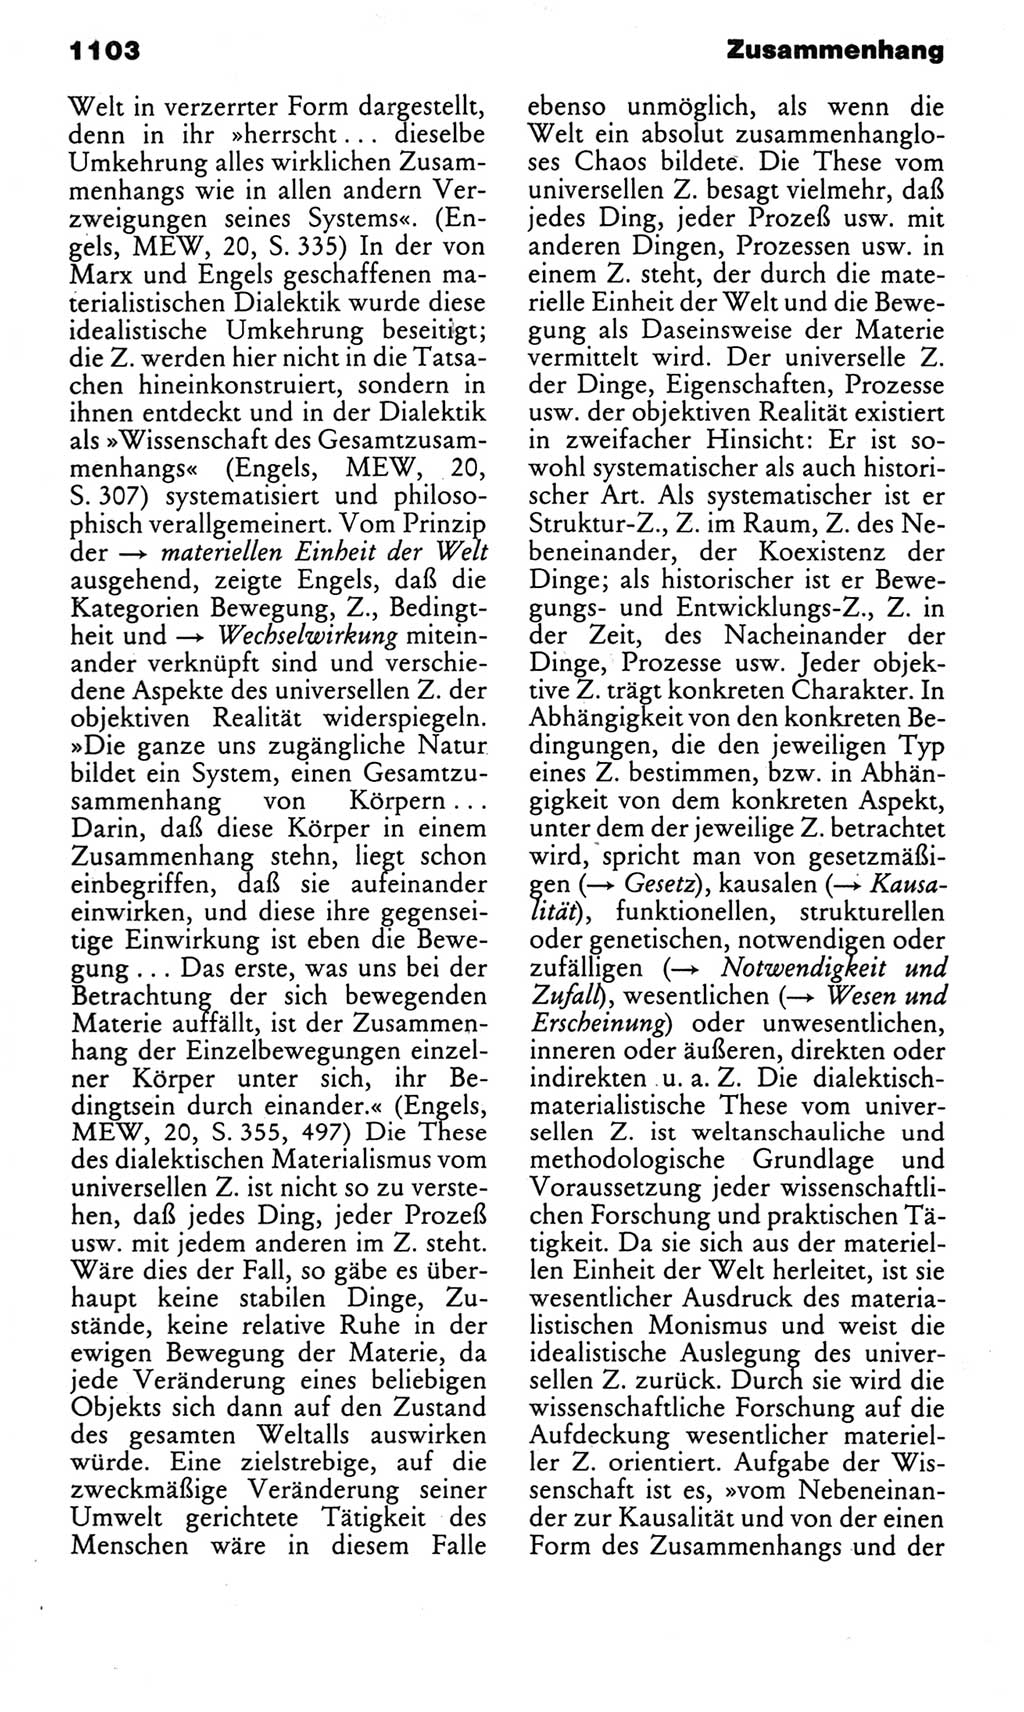 Kleines politisches Wörterbuch [Deutsche Demokratische Republik (DDR)] 1983, Seite 1103 (Kl. pol. Wb. DDR 1983, S. 1103)